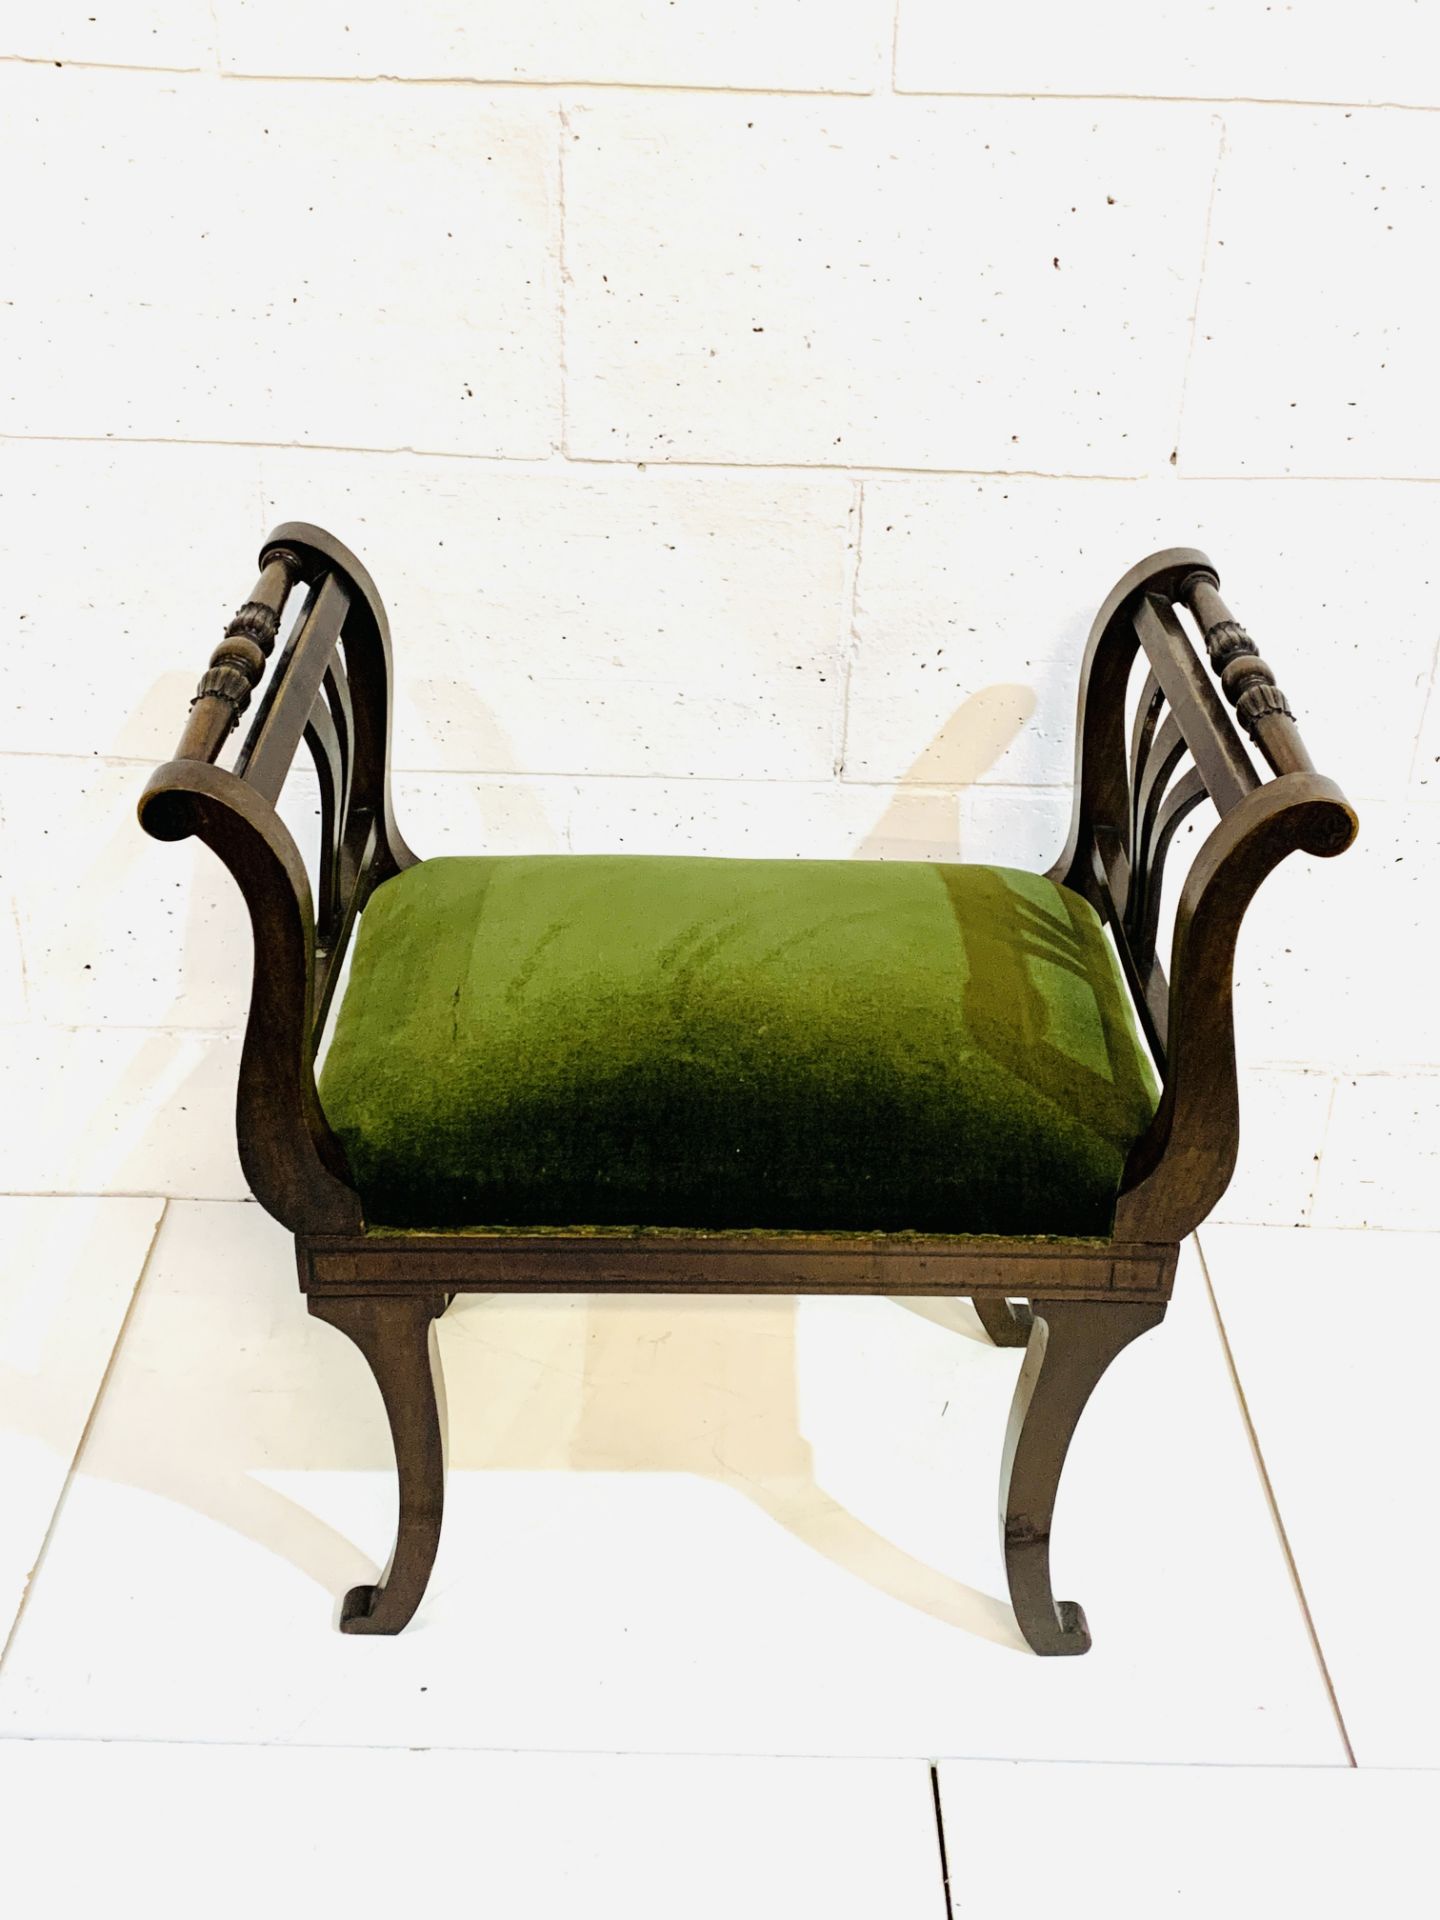 Mahogany Empire style stool with green velvet cushion. - Image 3 of 4